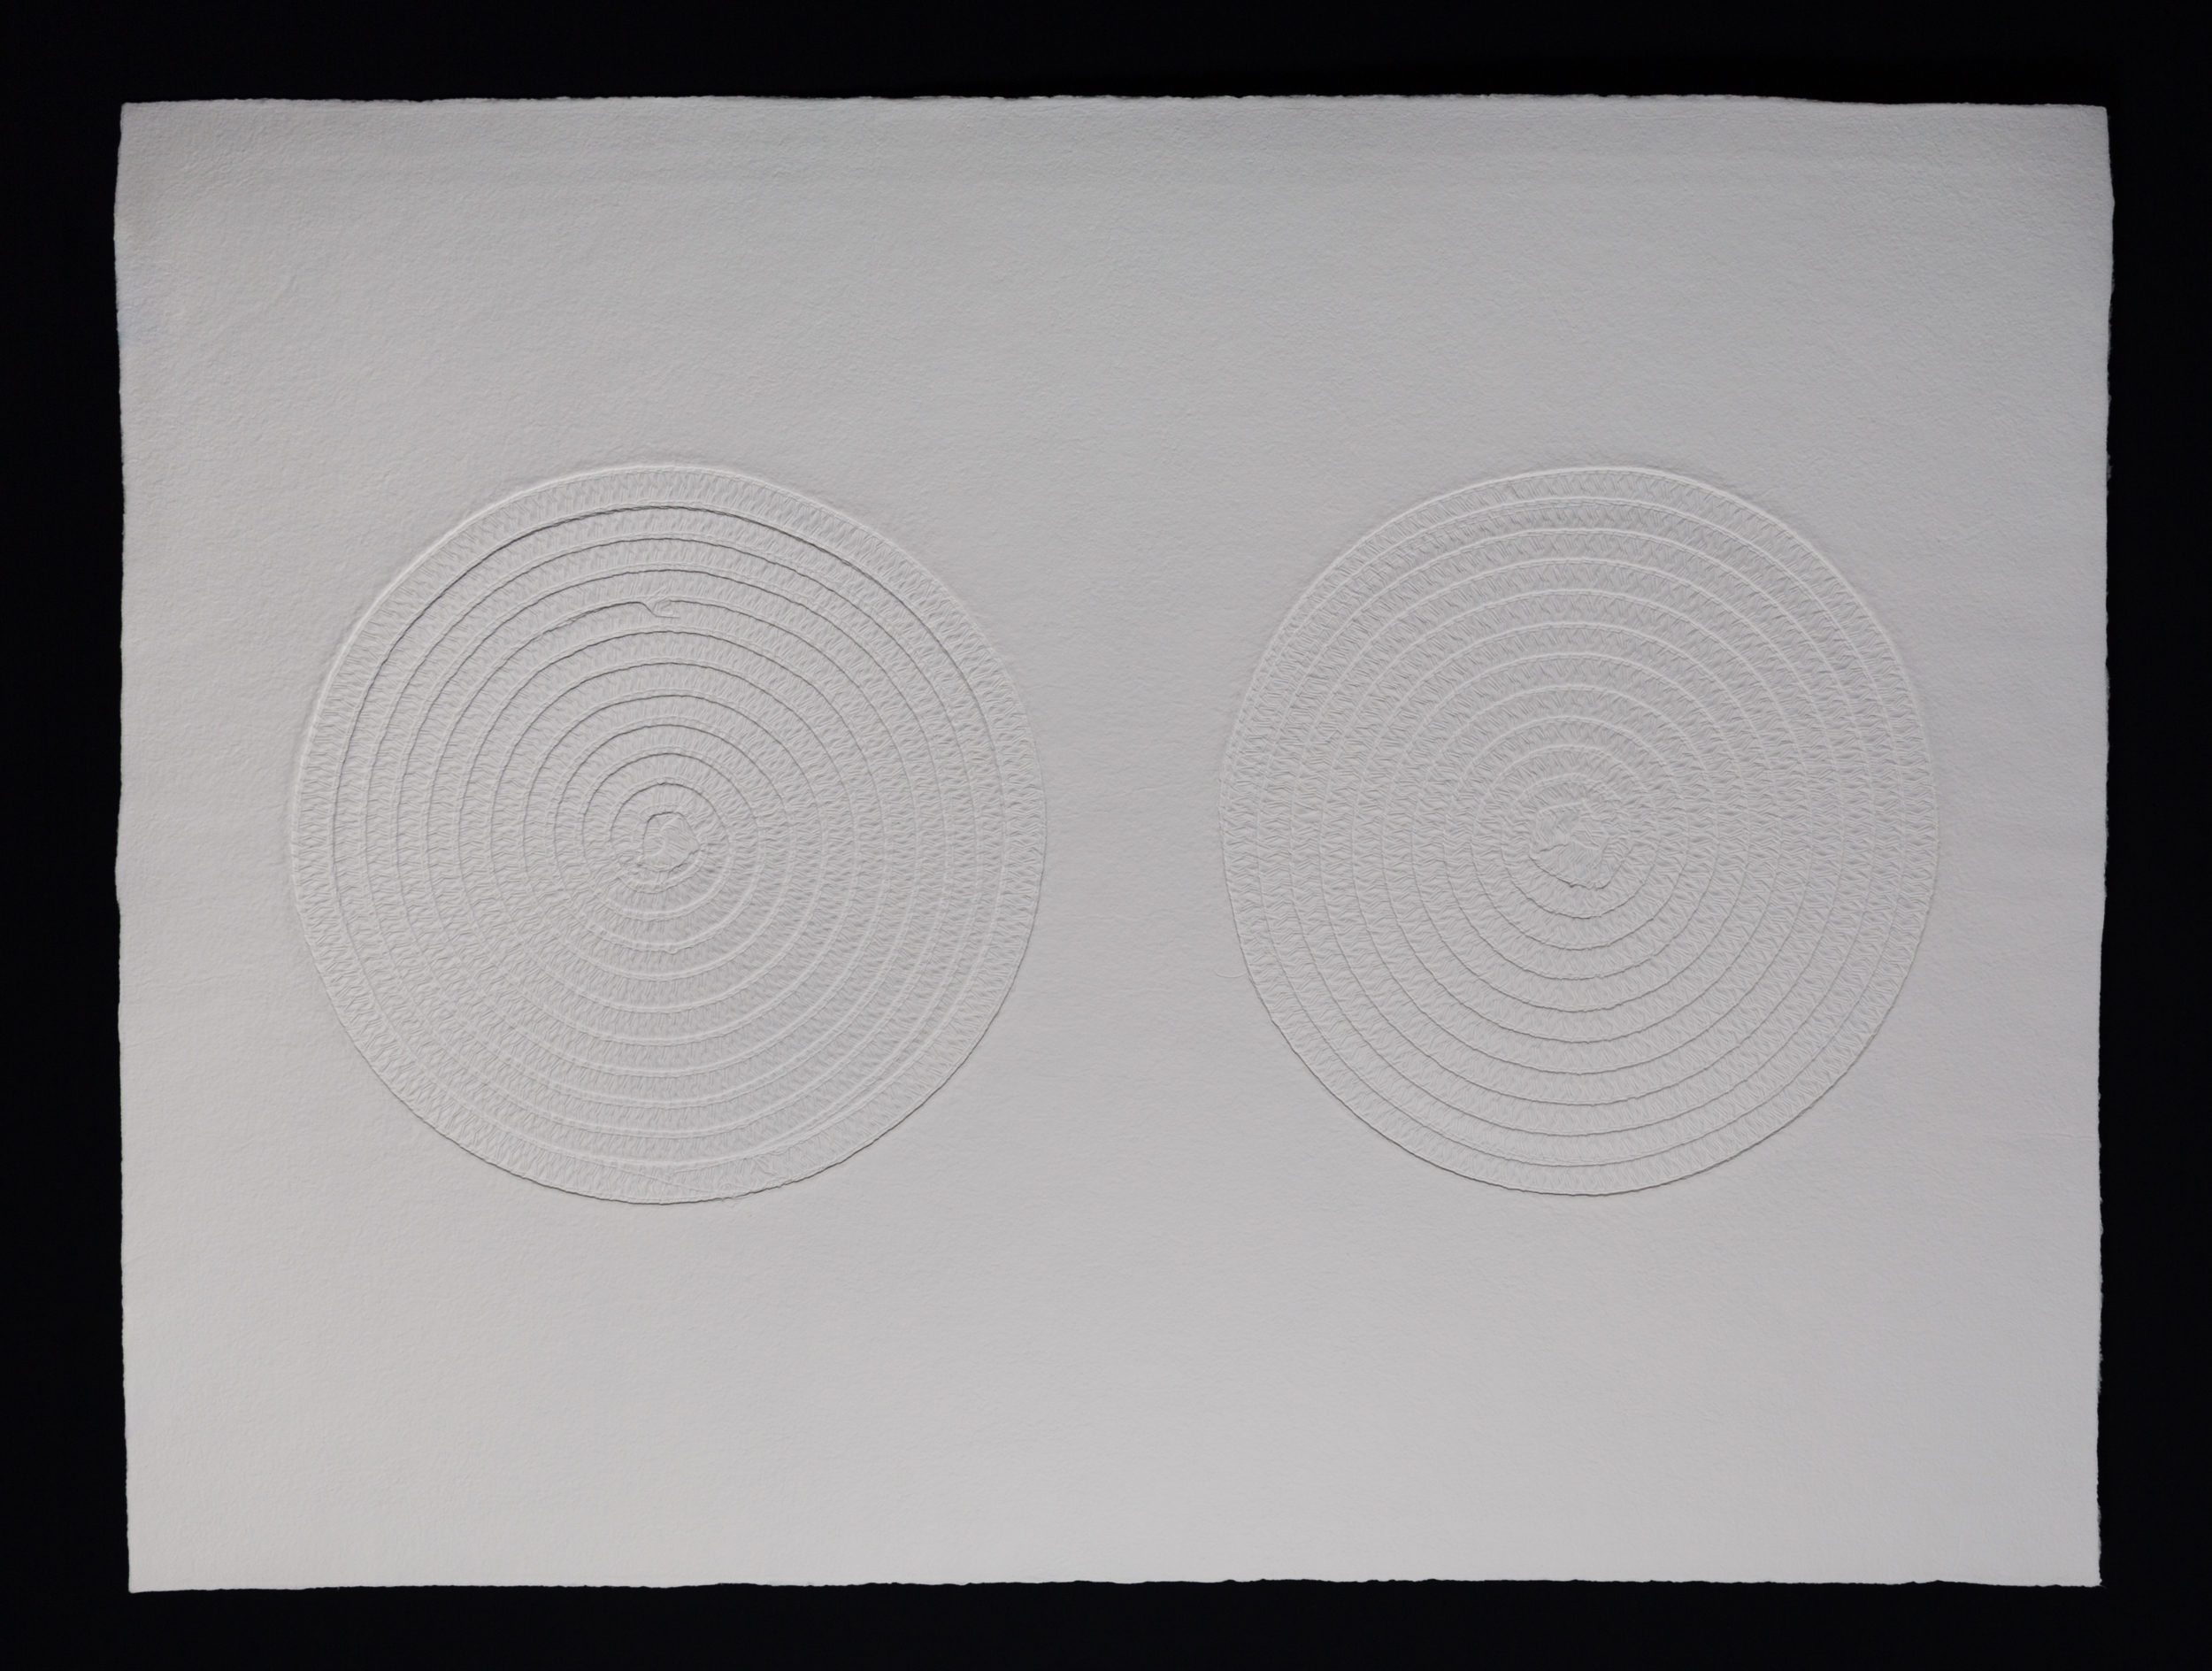   Double , 2017, cast cotton paper, 30" x 40" 